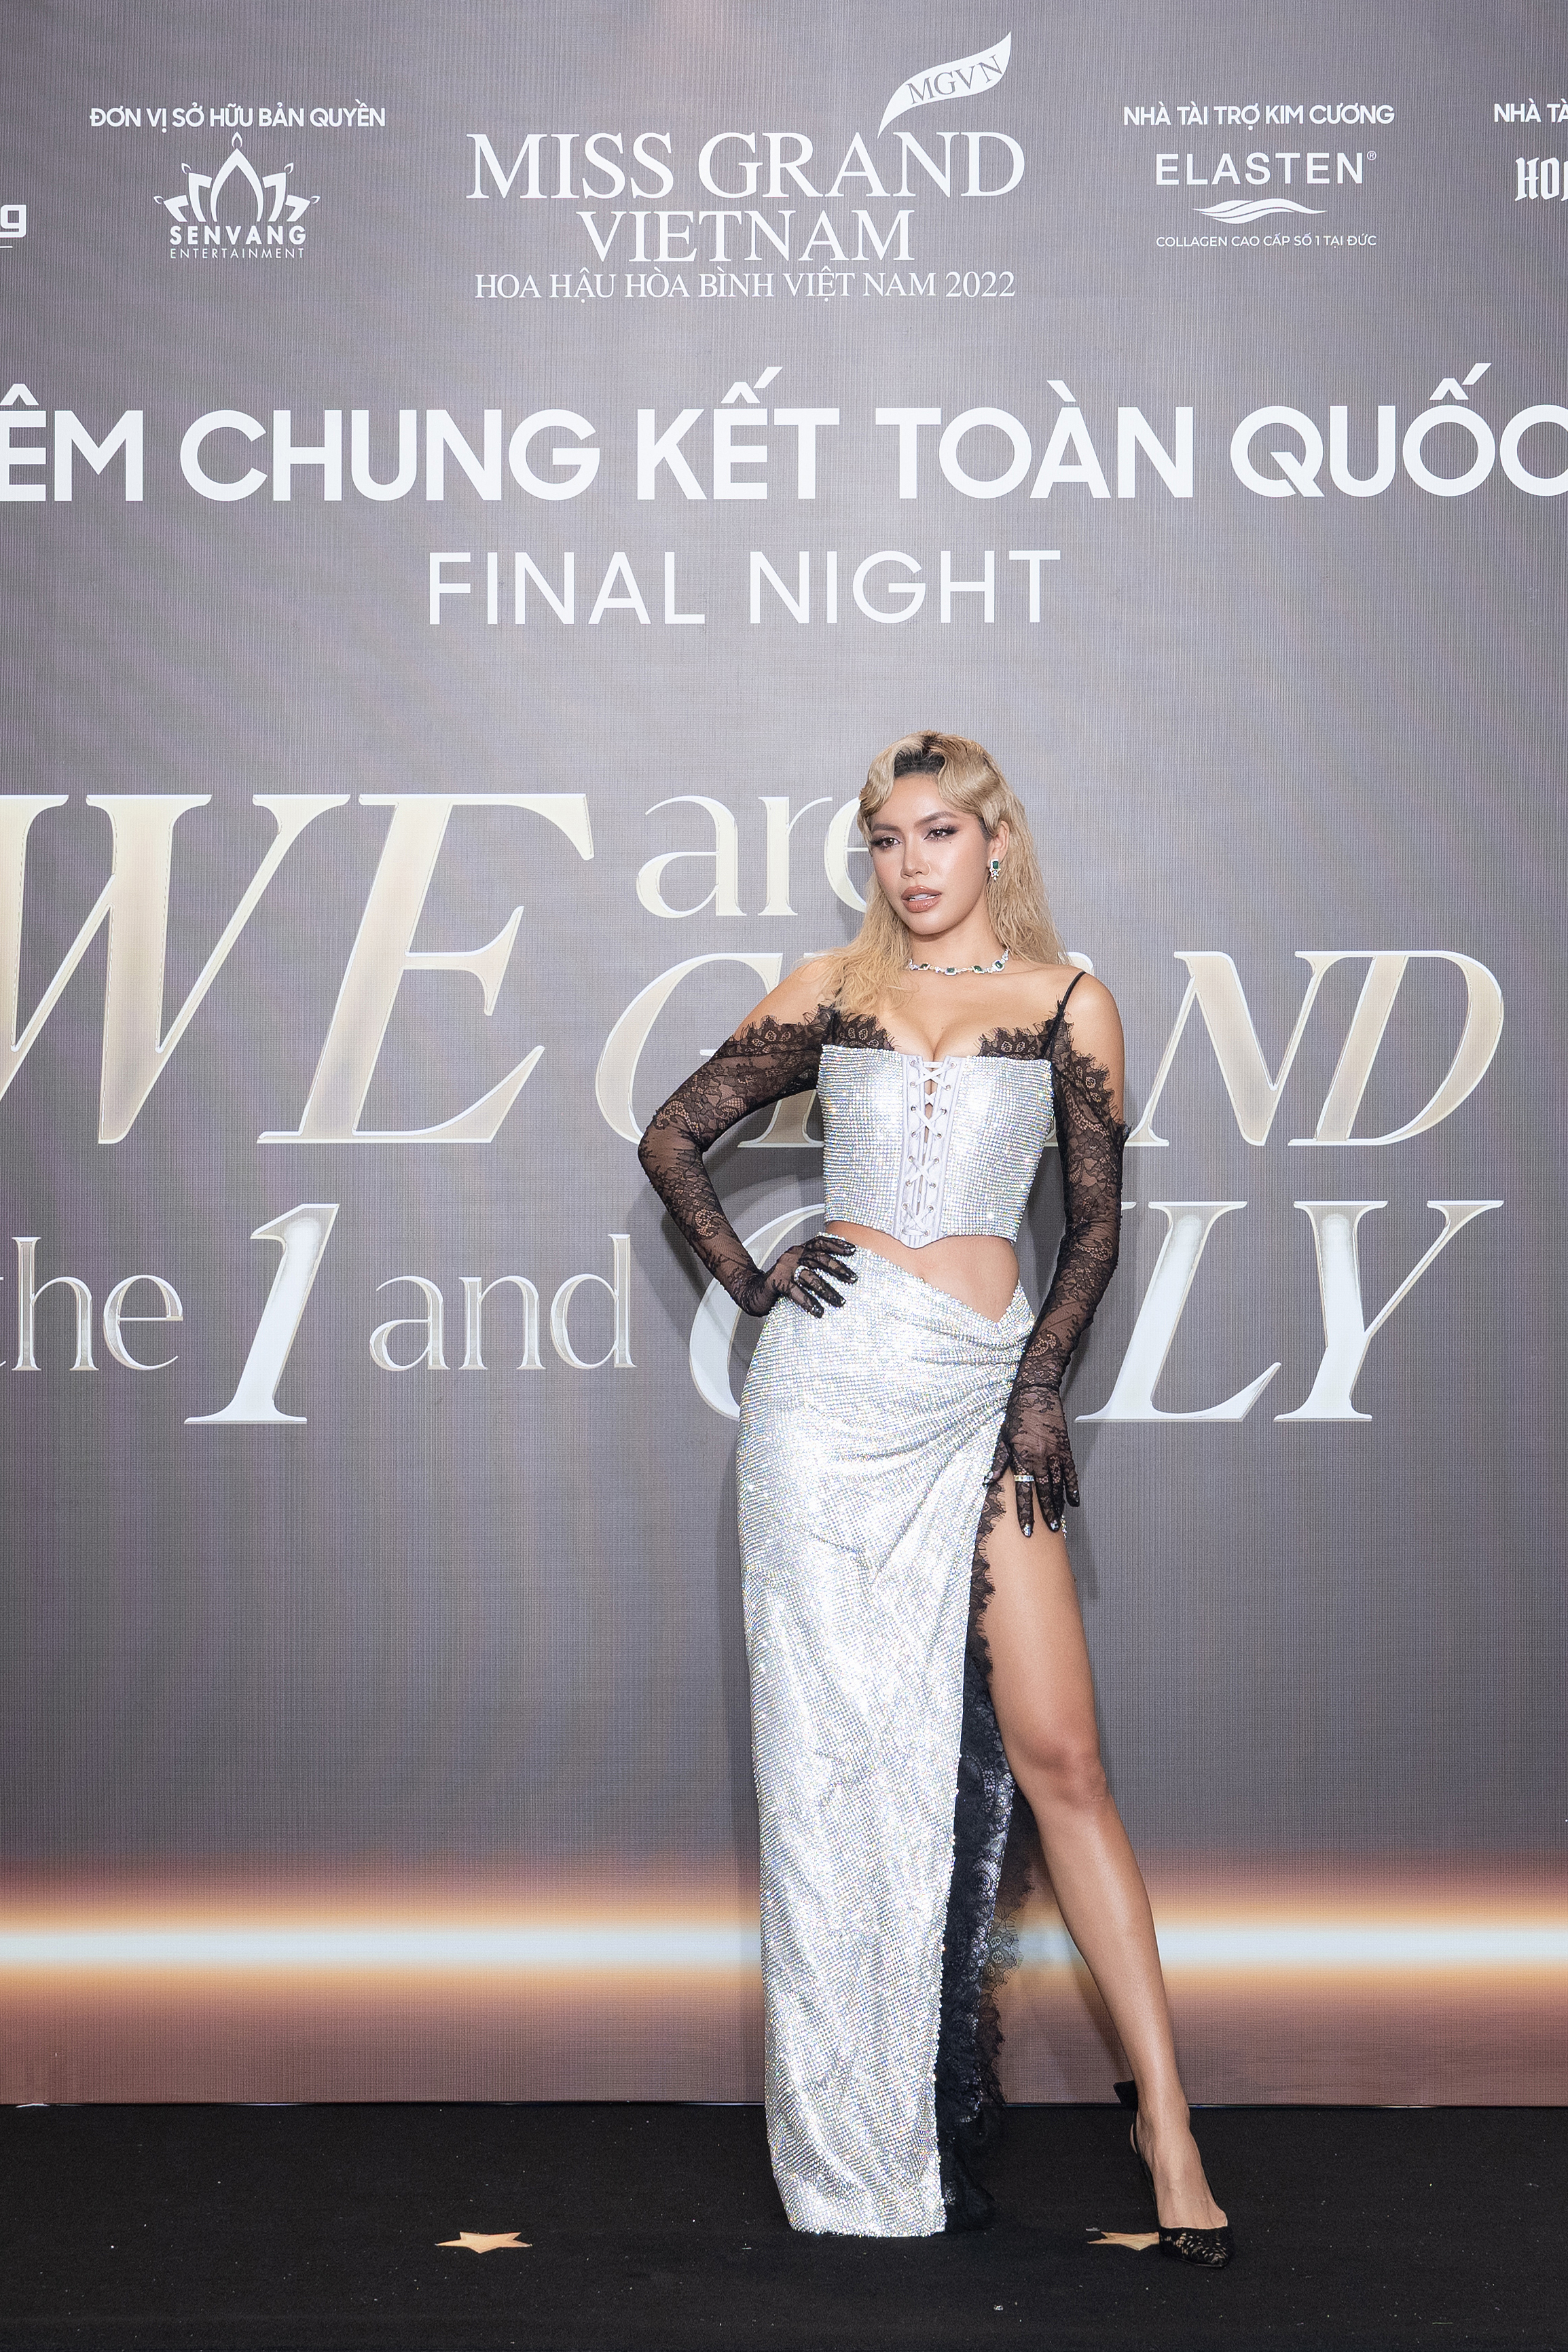 Thùy Tiên, Phương Nhi đội vương miện, rạng rỡ trên thảm đỏ chung kết Miss Grand Vietnam 2022-4